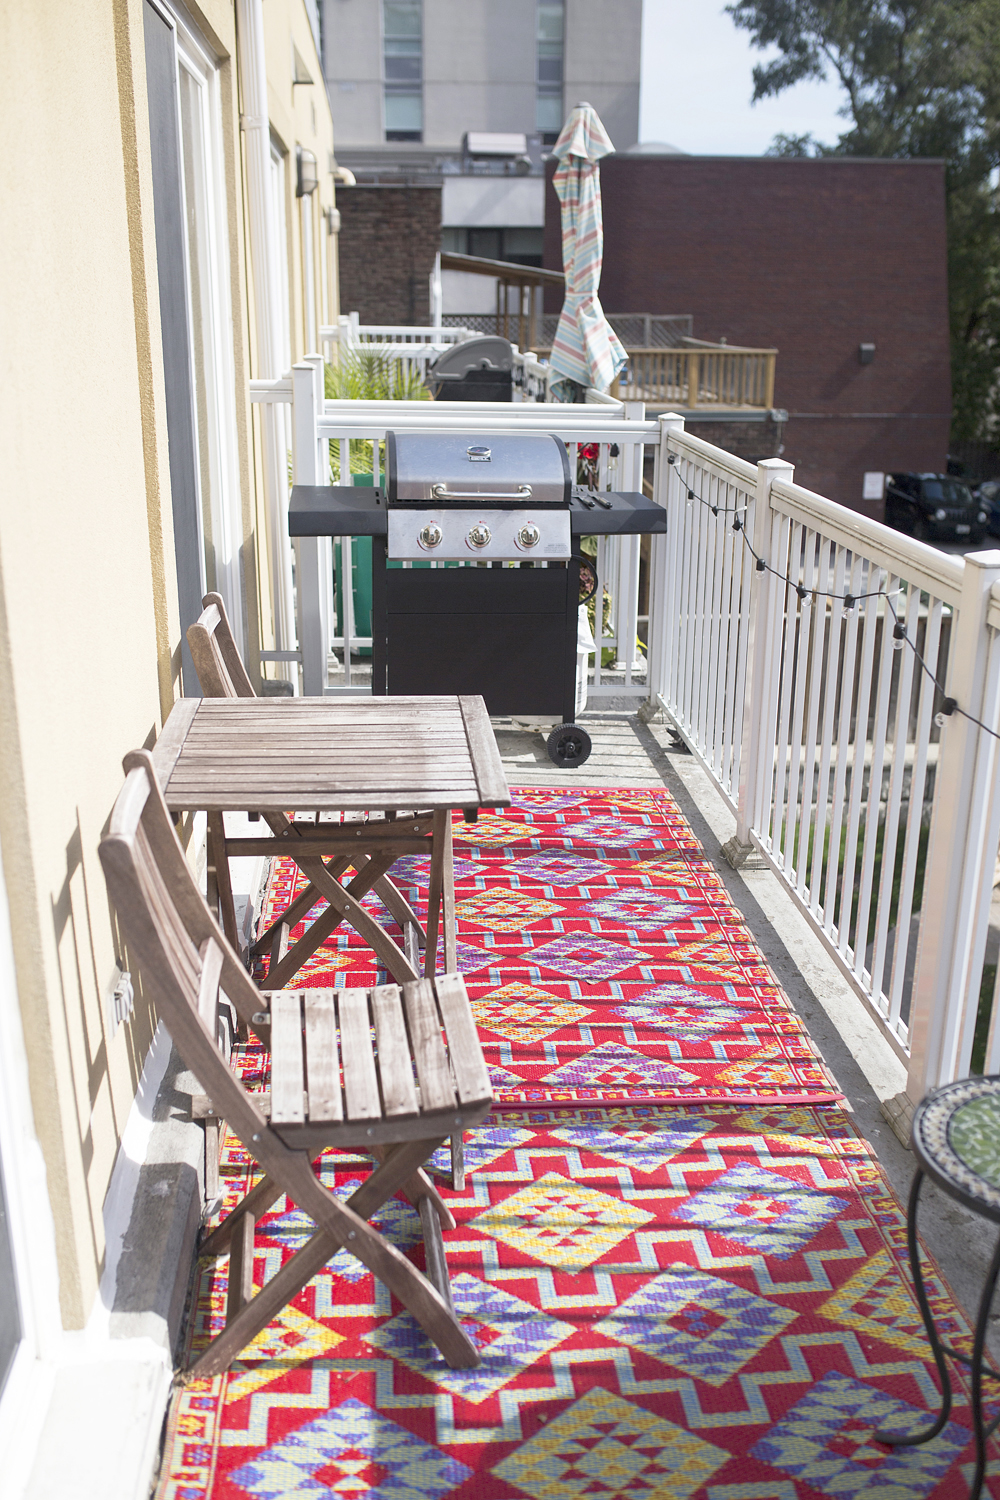 A long, narrow condo balcony with an outdoor area rug